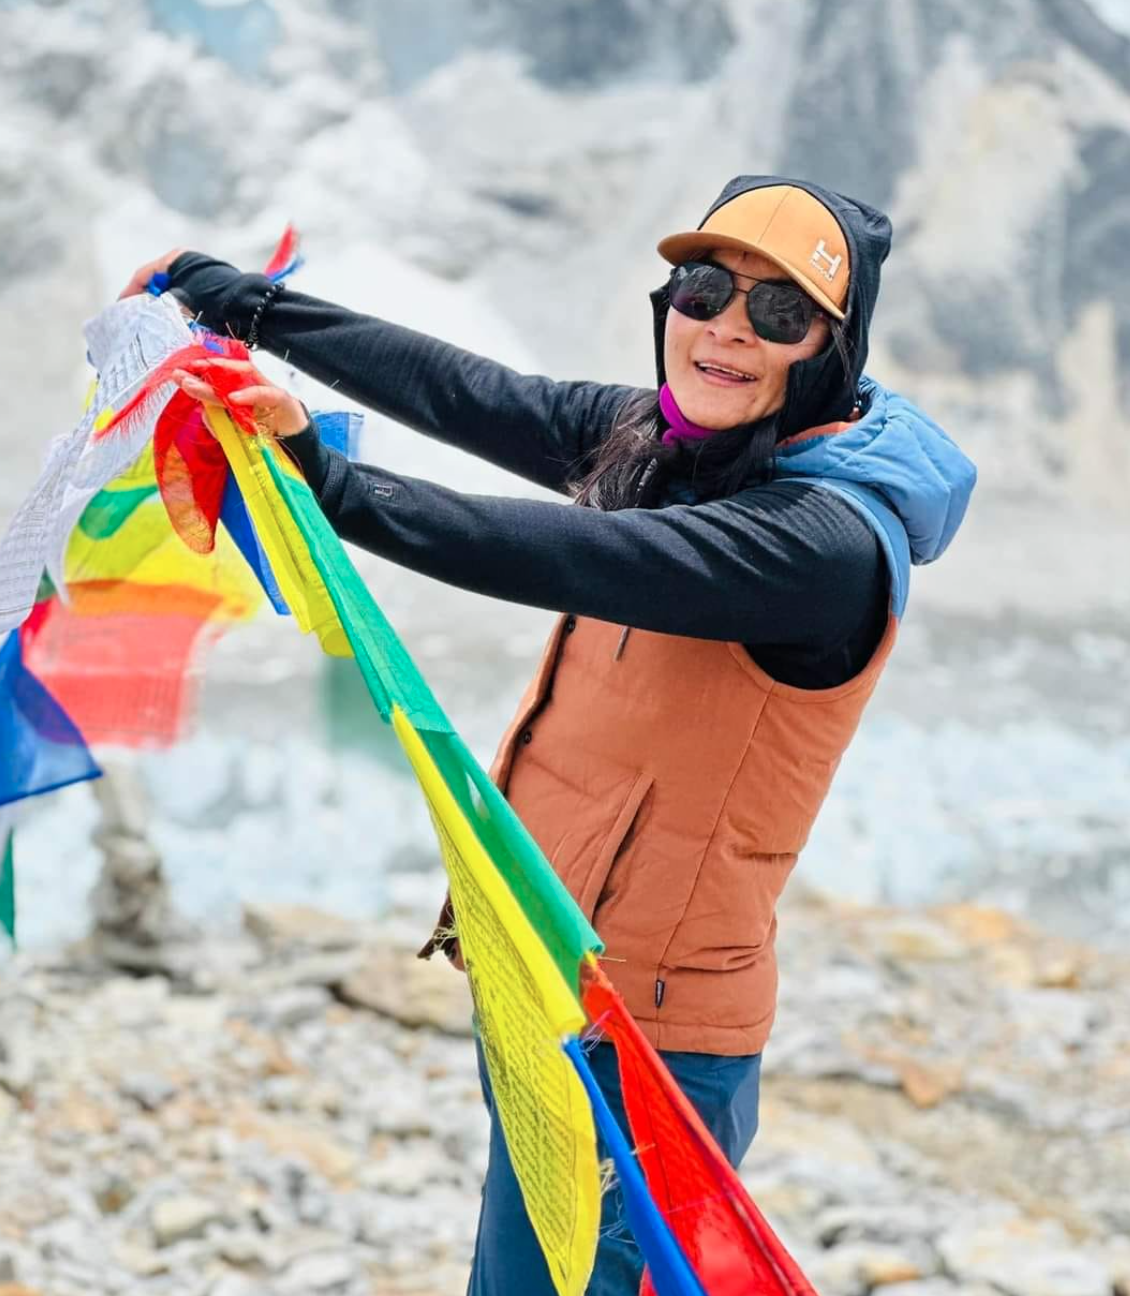 Die nepalesische Bergsteigerin Phunjo Lama blickt freudig in die Kamera.